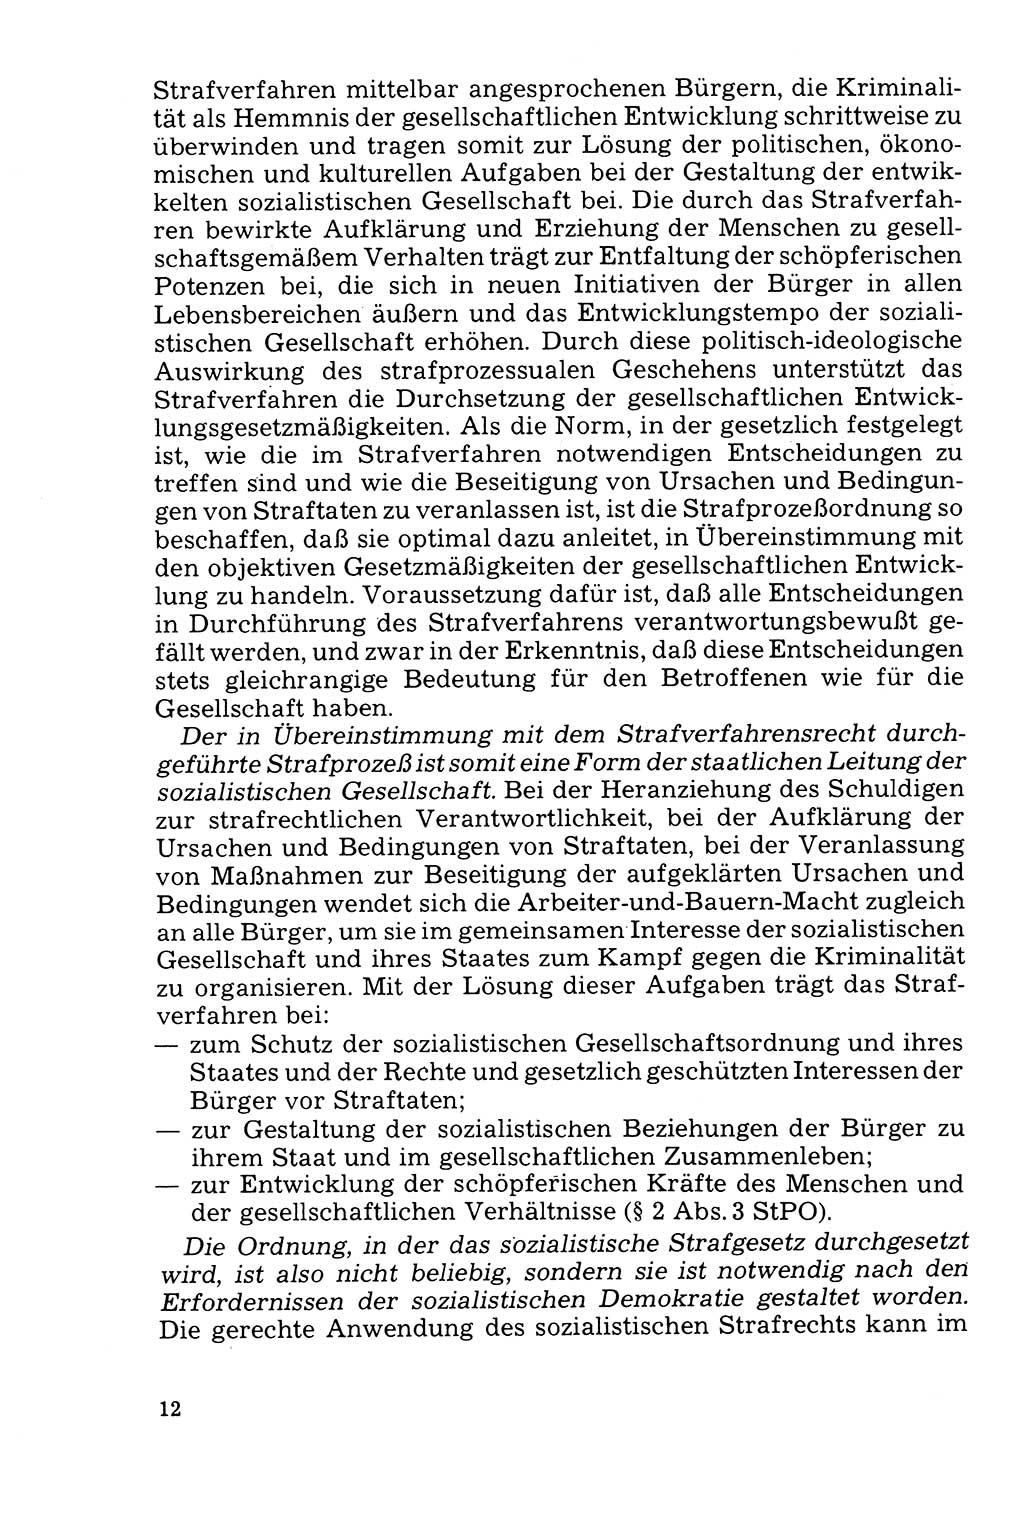 Der Abschluß des Ermittlungsverfahrens [Deutsche Demokratische Republik (DDR)] 1978, Seite 12 (Abschl. EV DDR 1978, S. 12)